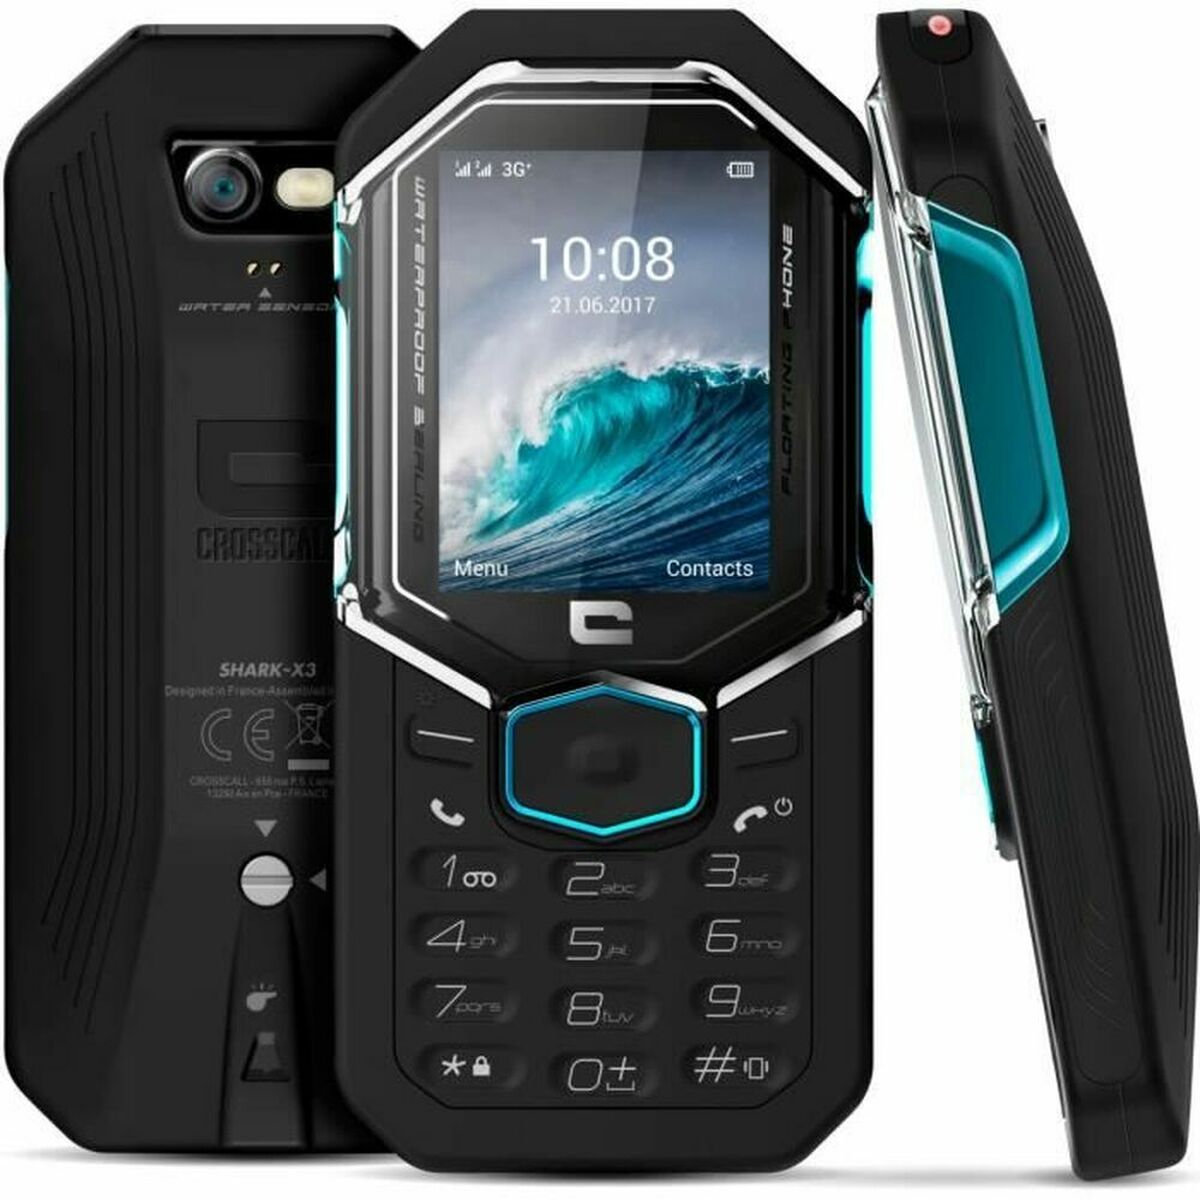 Smartphone CROSSCALL Shark x3 DS 2,4